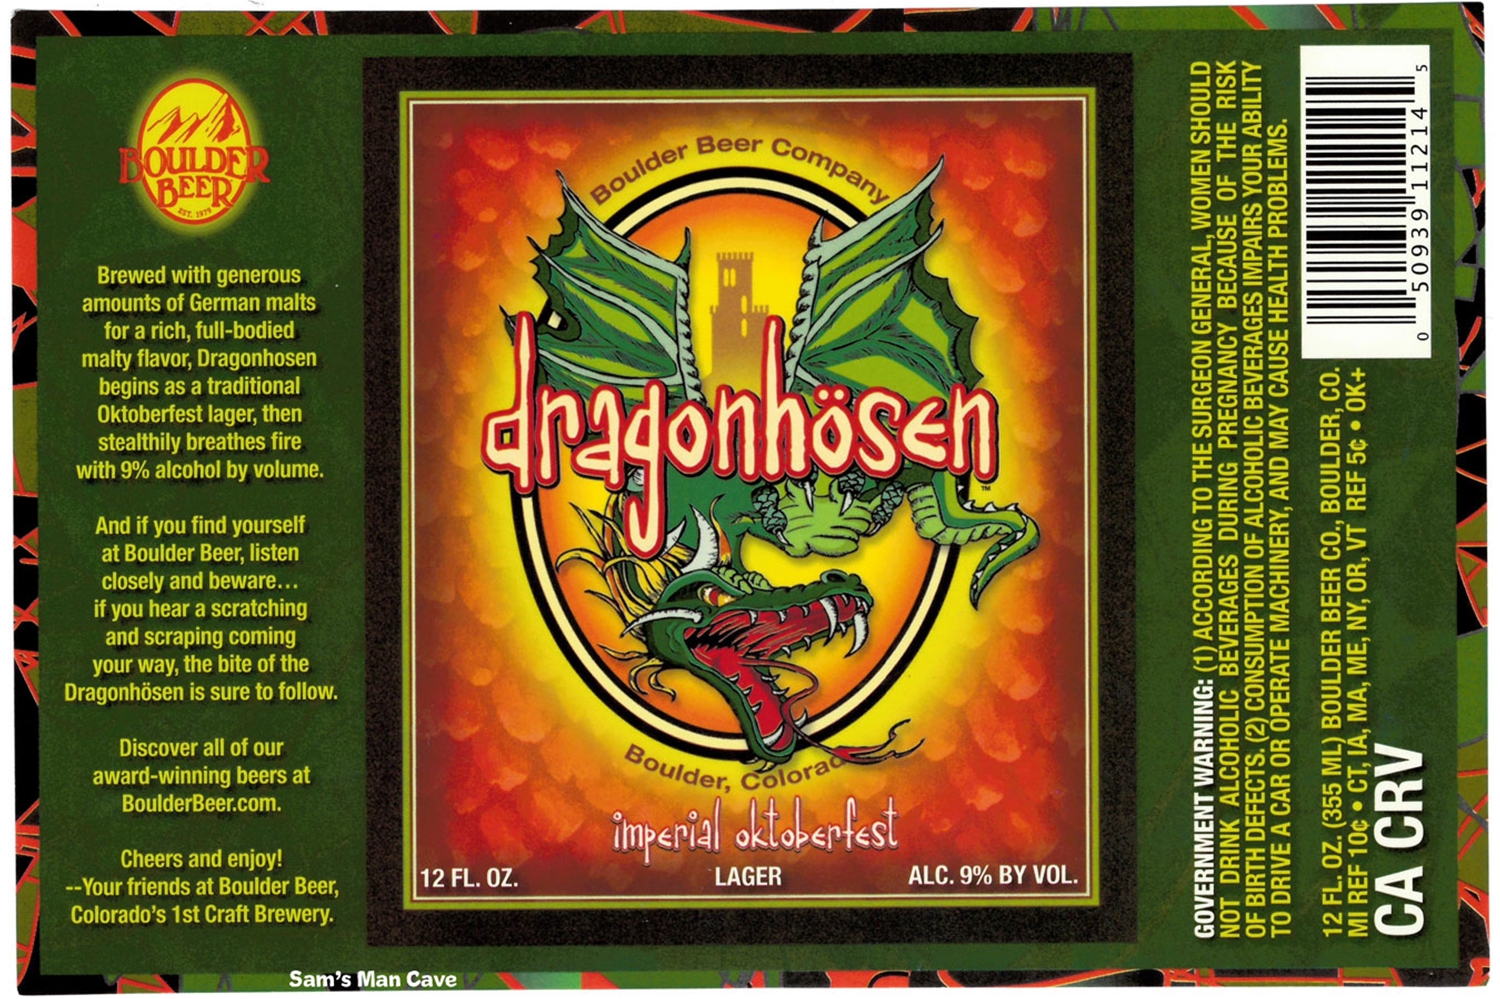 Boulder Beer Dragonhosen Imperial Oktoberfest Label